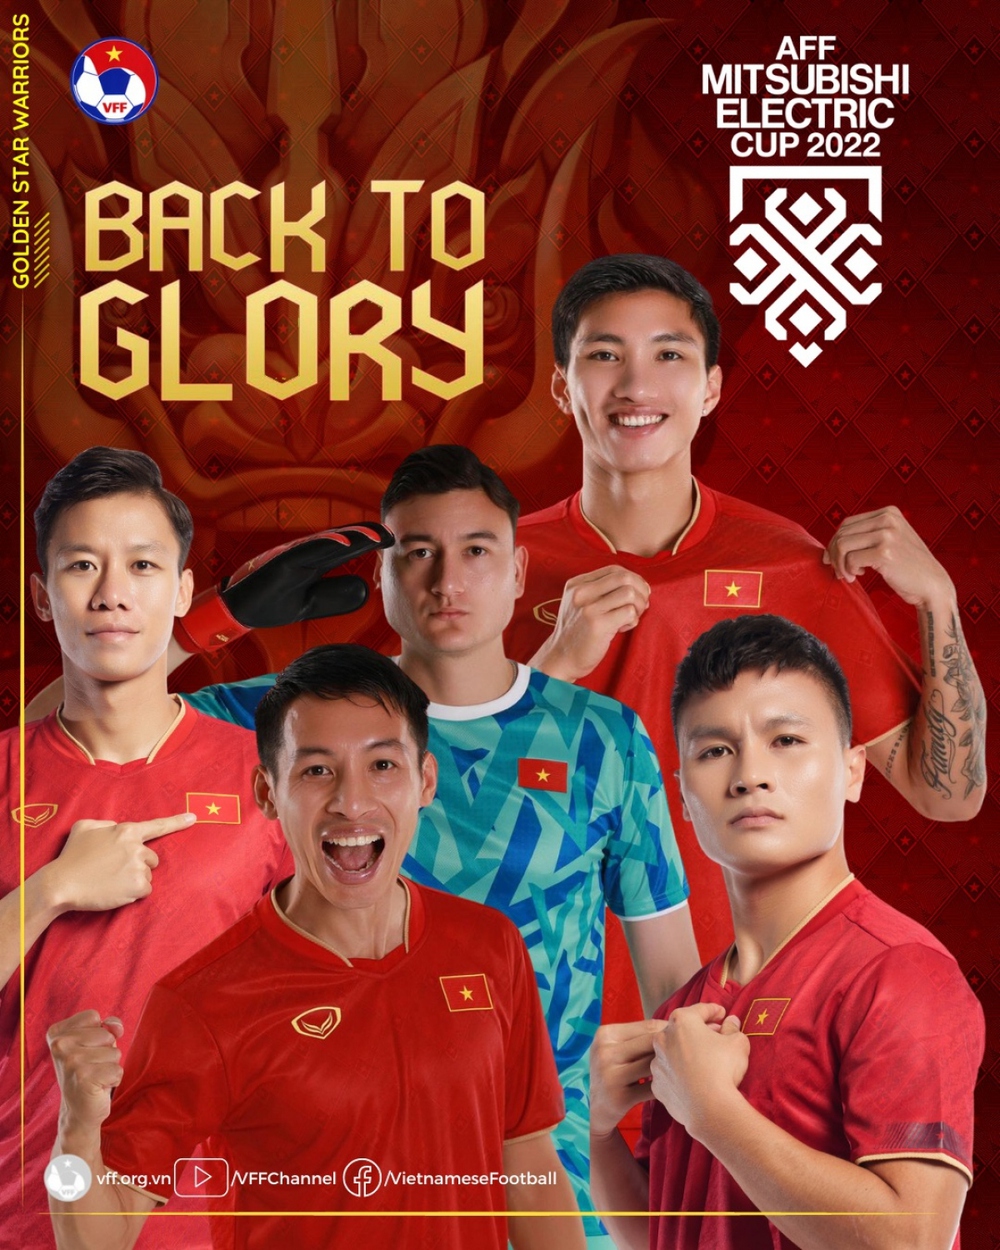 ĐT Việt Nam đổi màu áo cho thủ môn Văn Lâm để tránh “vận đen” ở chung kết lượt về - Ảnh 1.